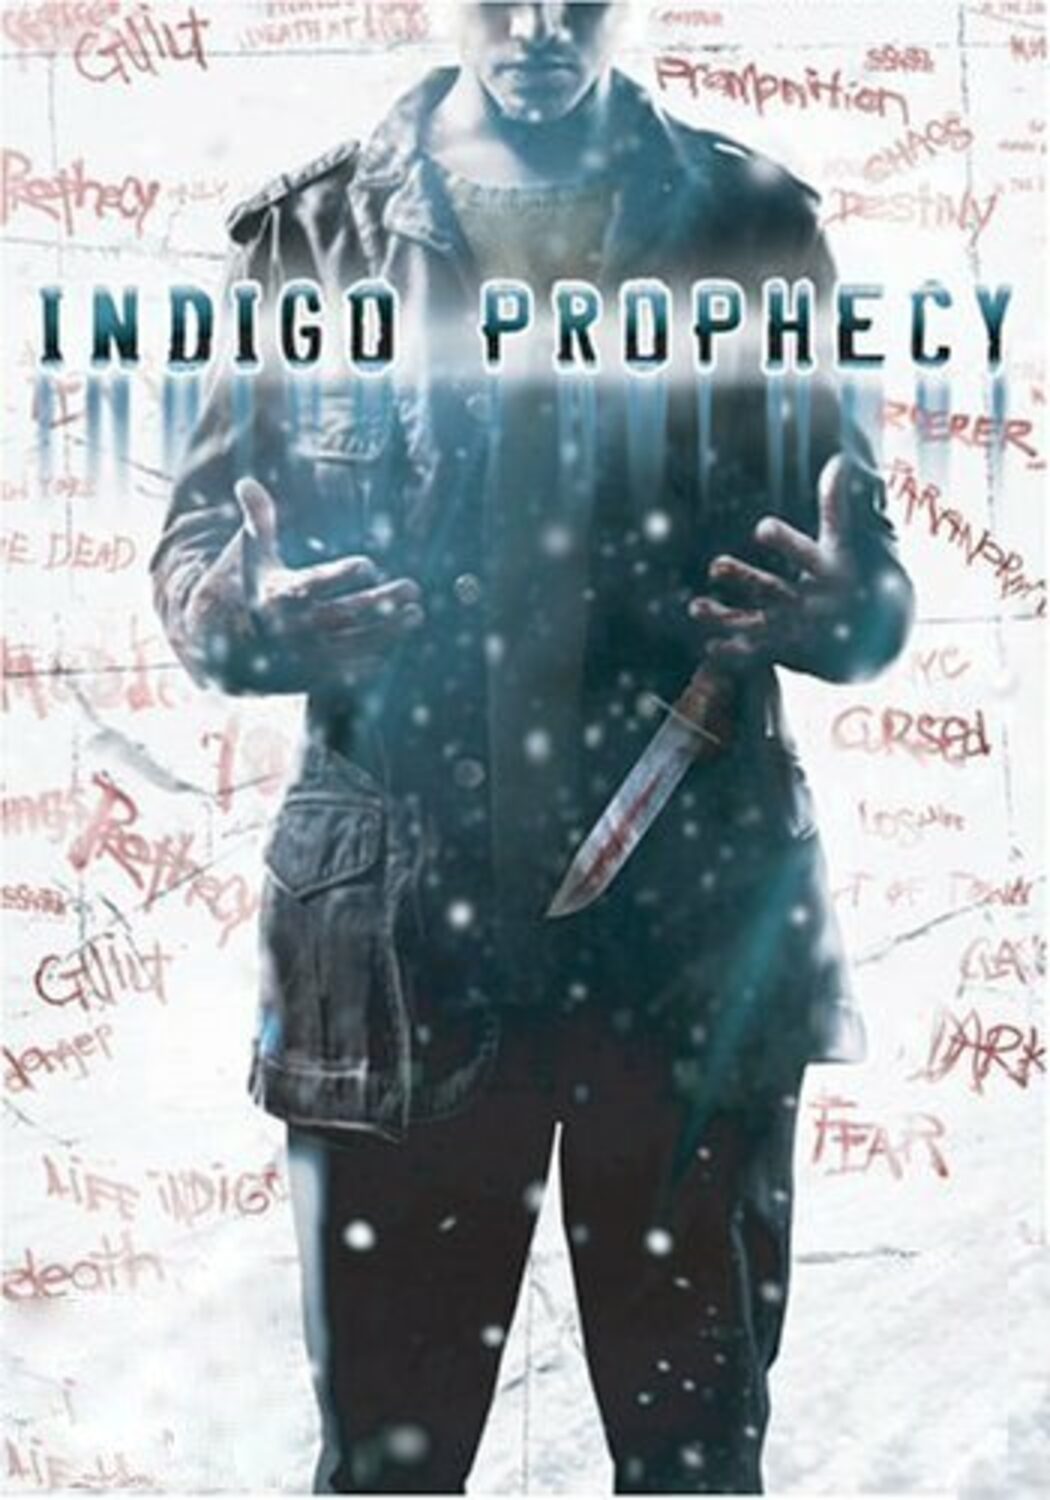 Comunità di Steam :: Fahrenheit: Indigo Prophecy Remastered